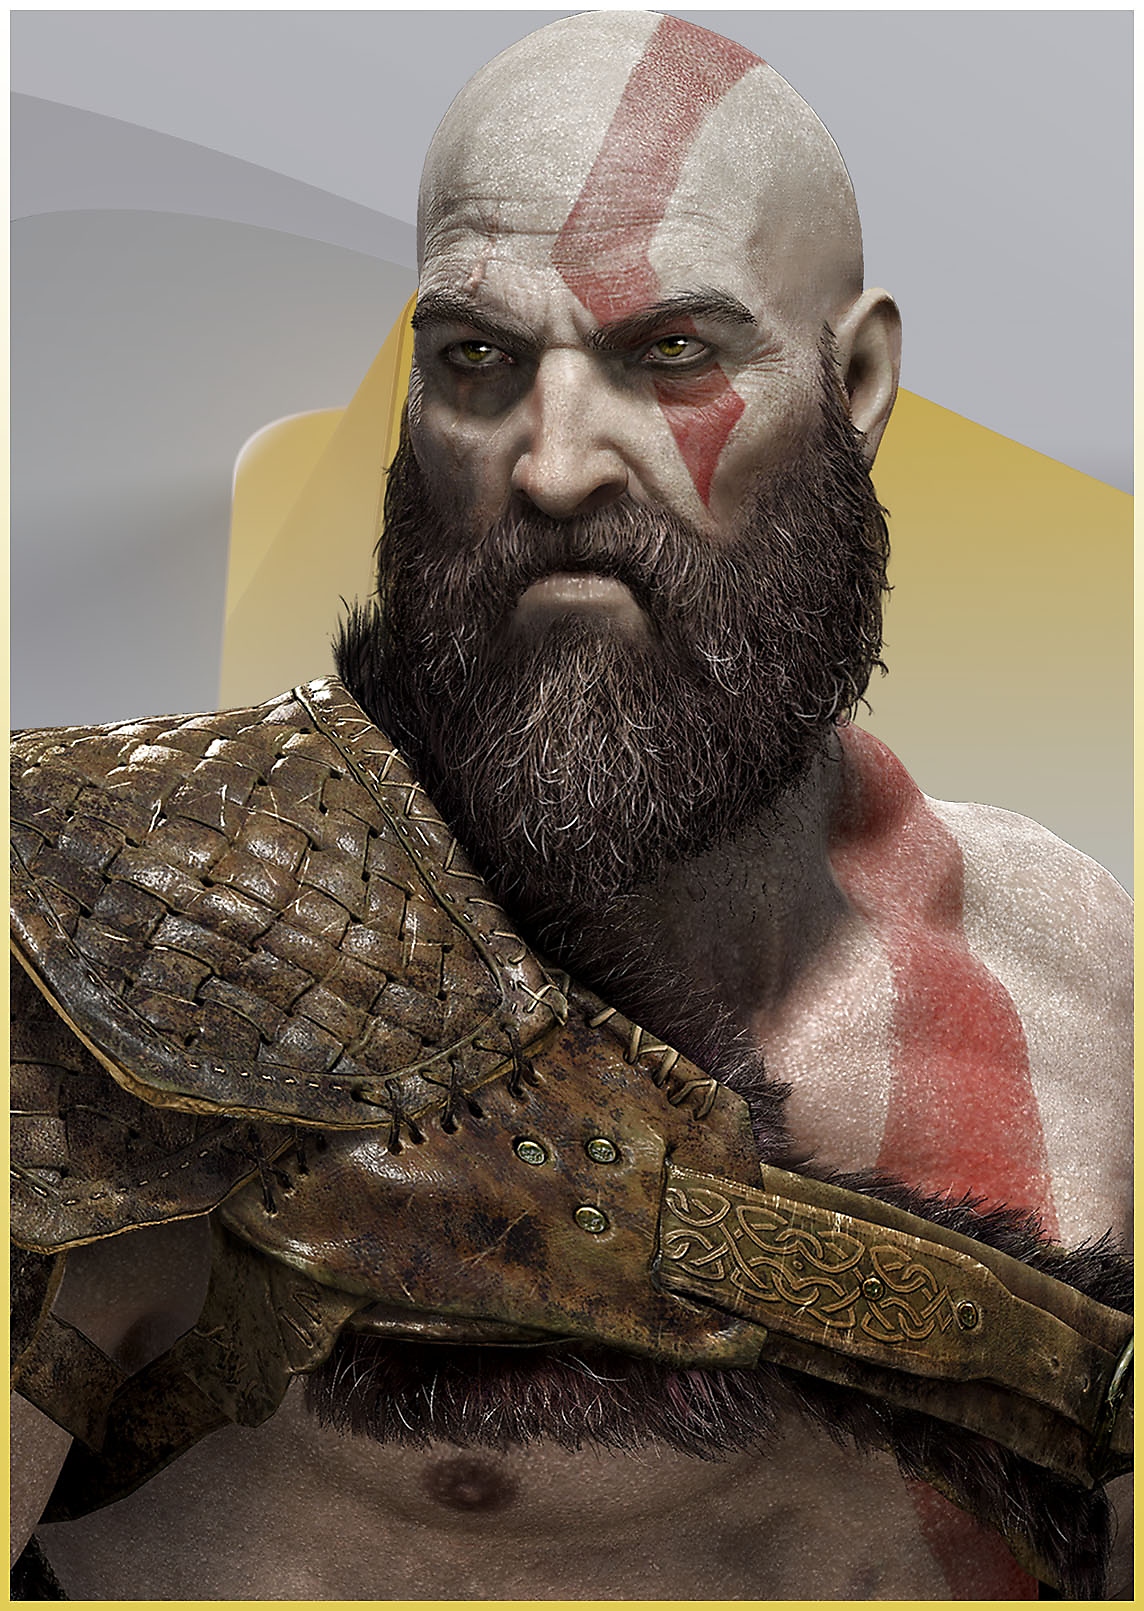 Kratos fra God of War som ser sint ut